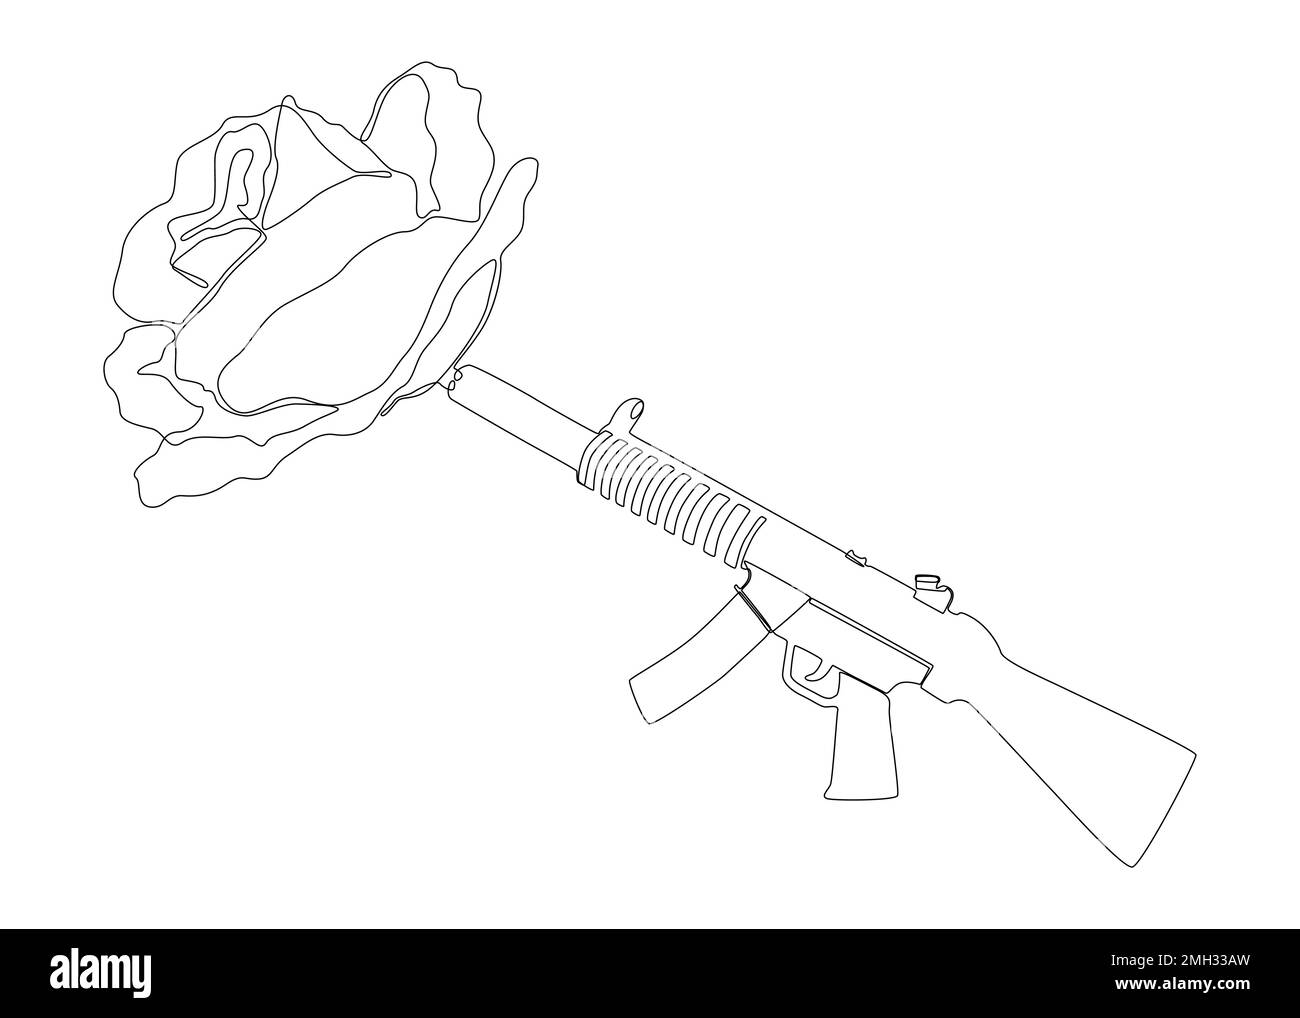 Eine durchgehende Linie einer Maschinenpistole mit Rose. Vektorkonzept zur Darstellung dünner Linien. Kontur Zeichnen kreativer Ideen. Stock Vektor